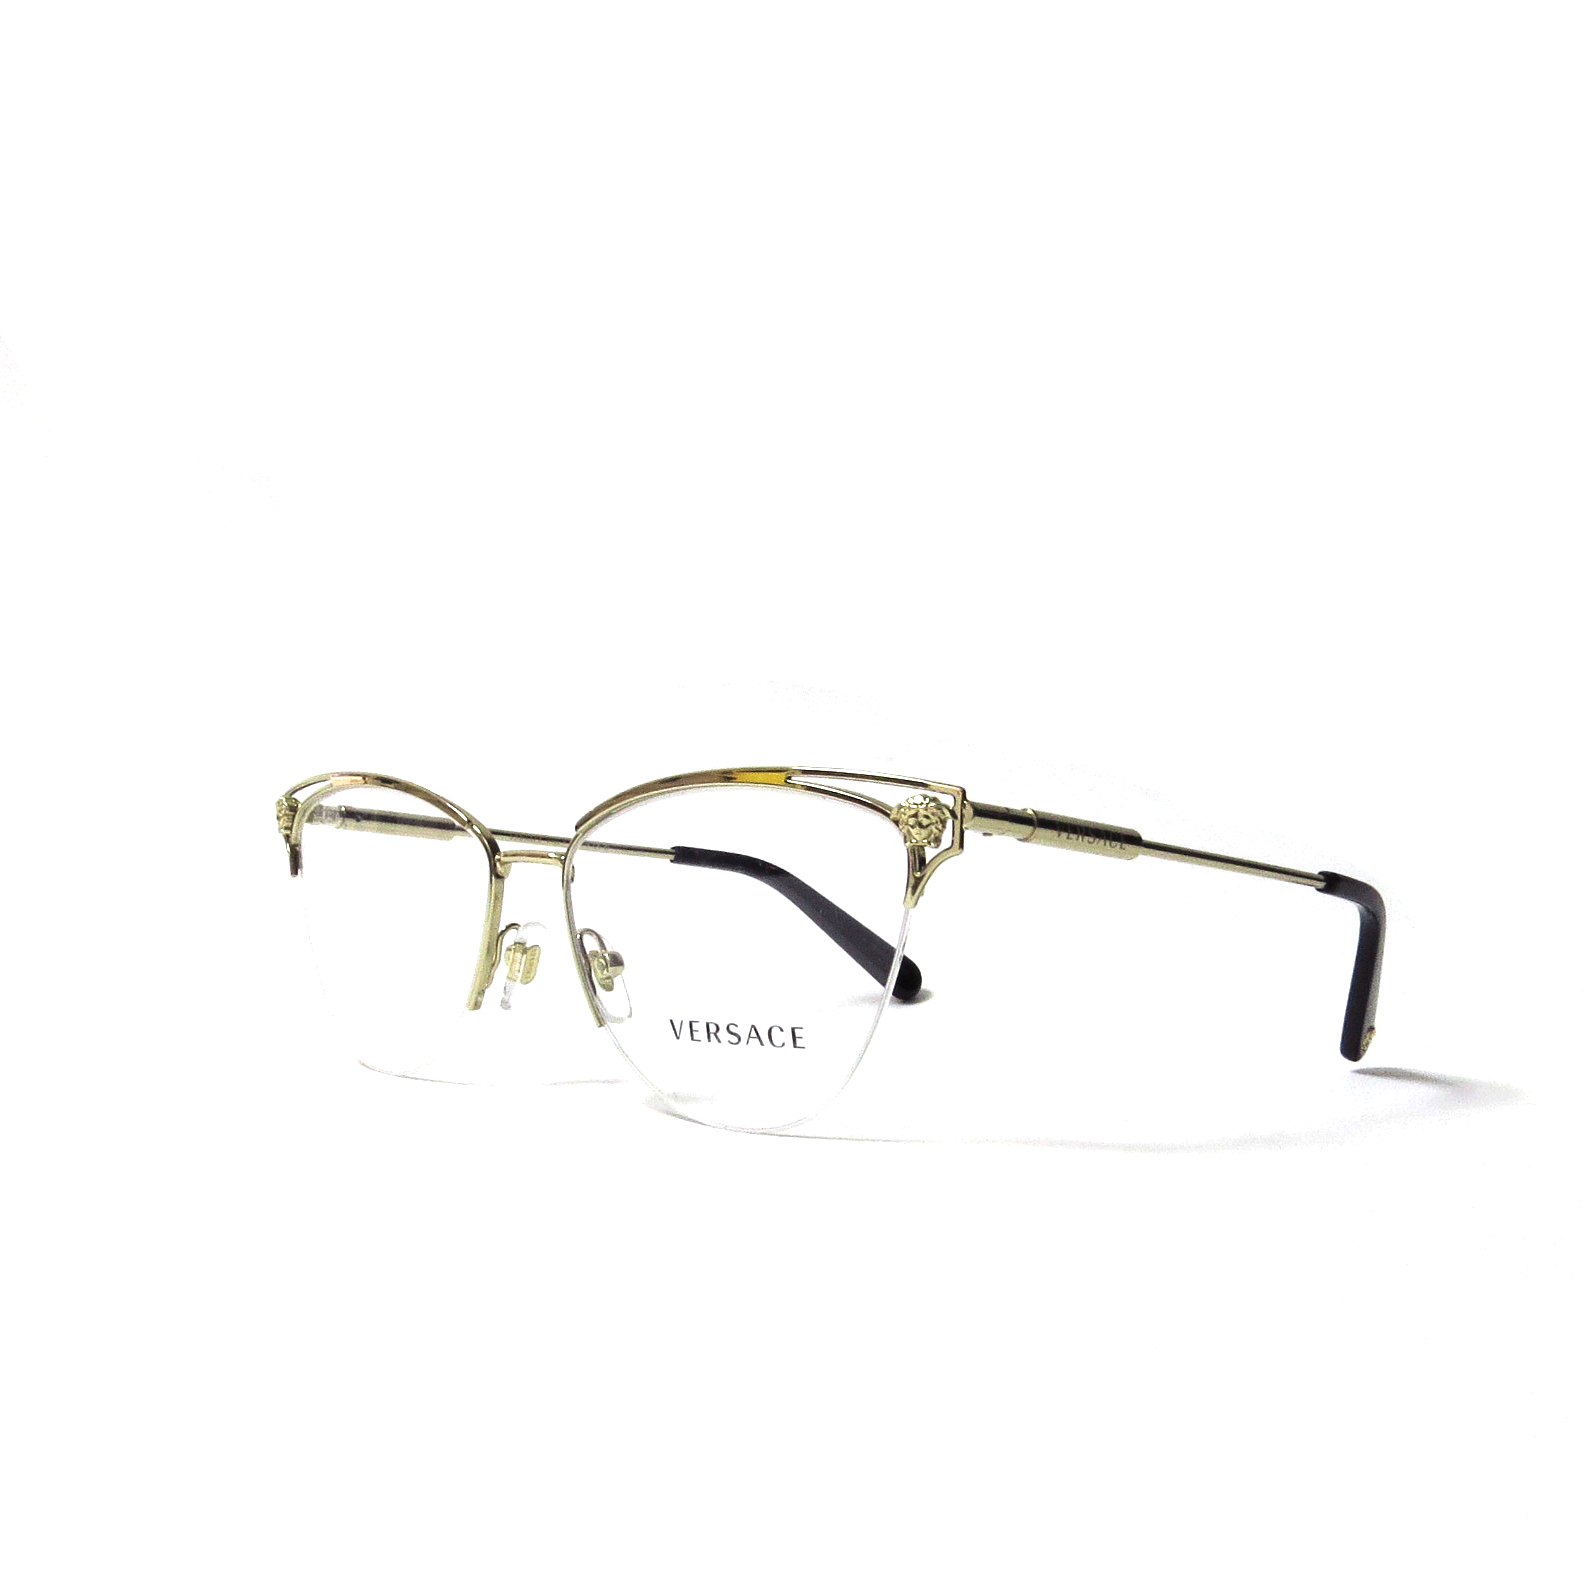 Óptica gafas | VERSACE - 1280 - Óptica gafas